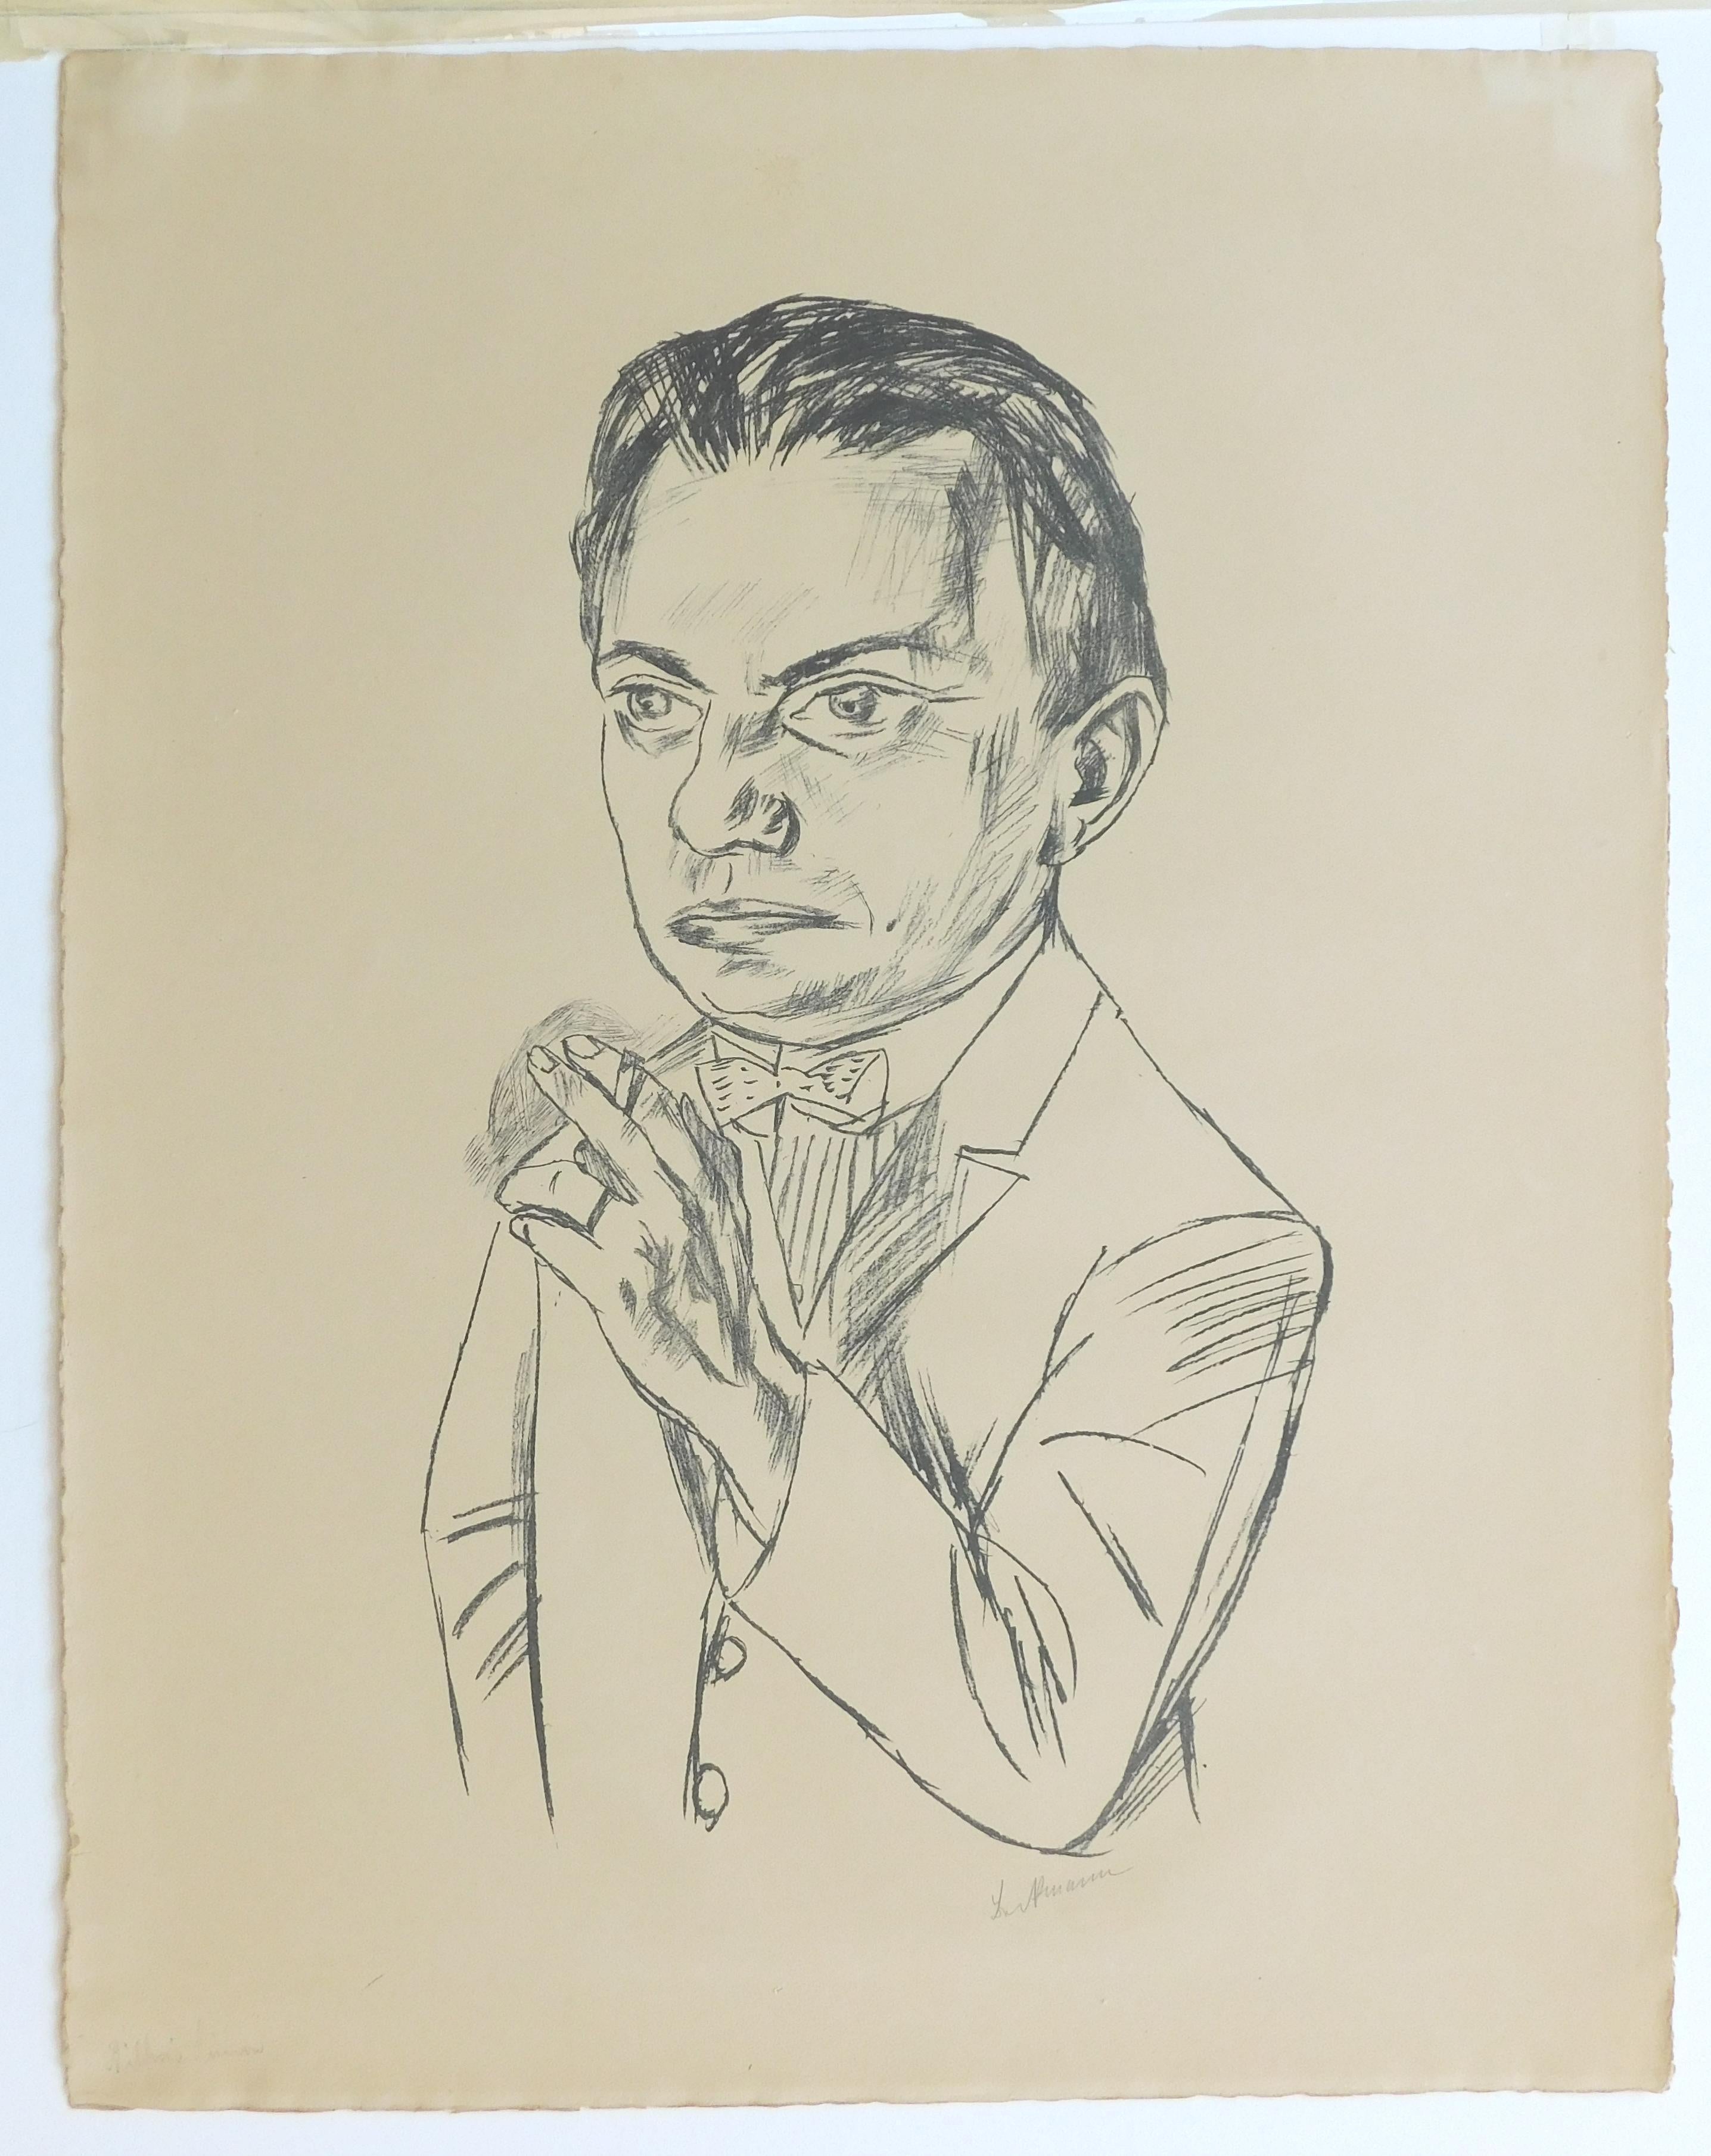 Lithographie originale sur pierre, un portrait de l'expressionniste allemand Max Beckmann.
Intitulé 